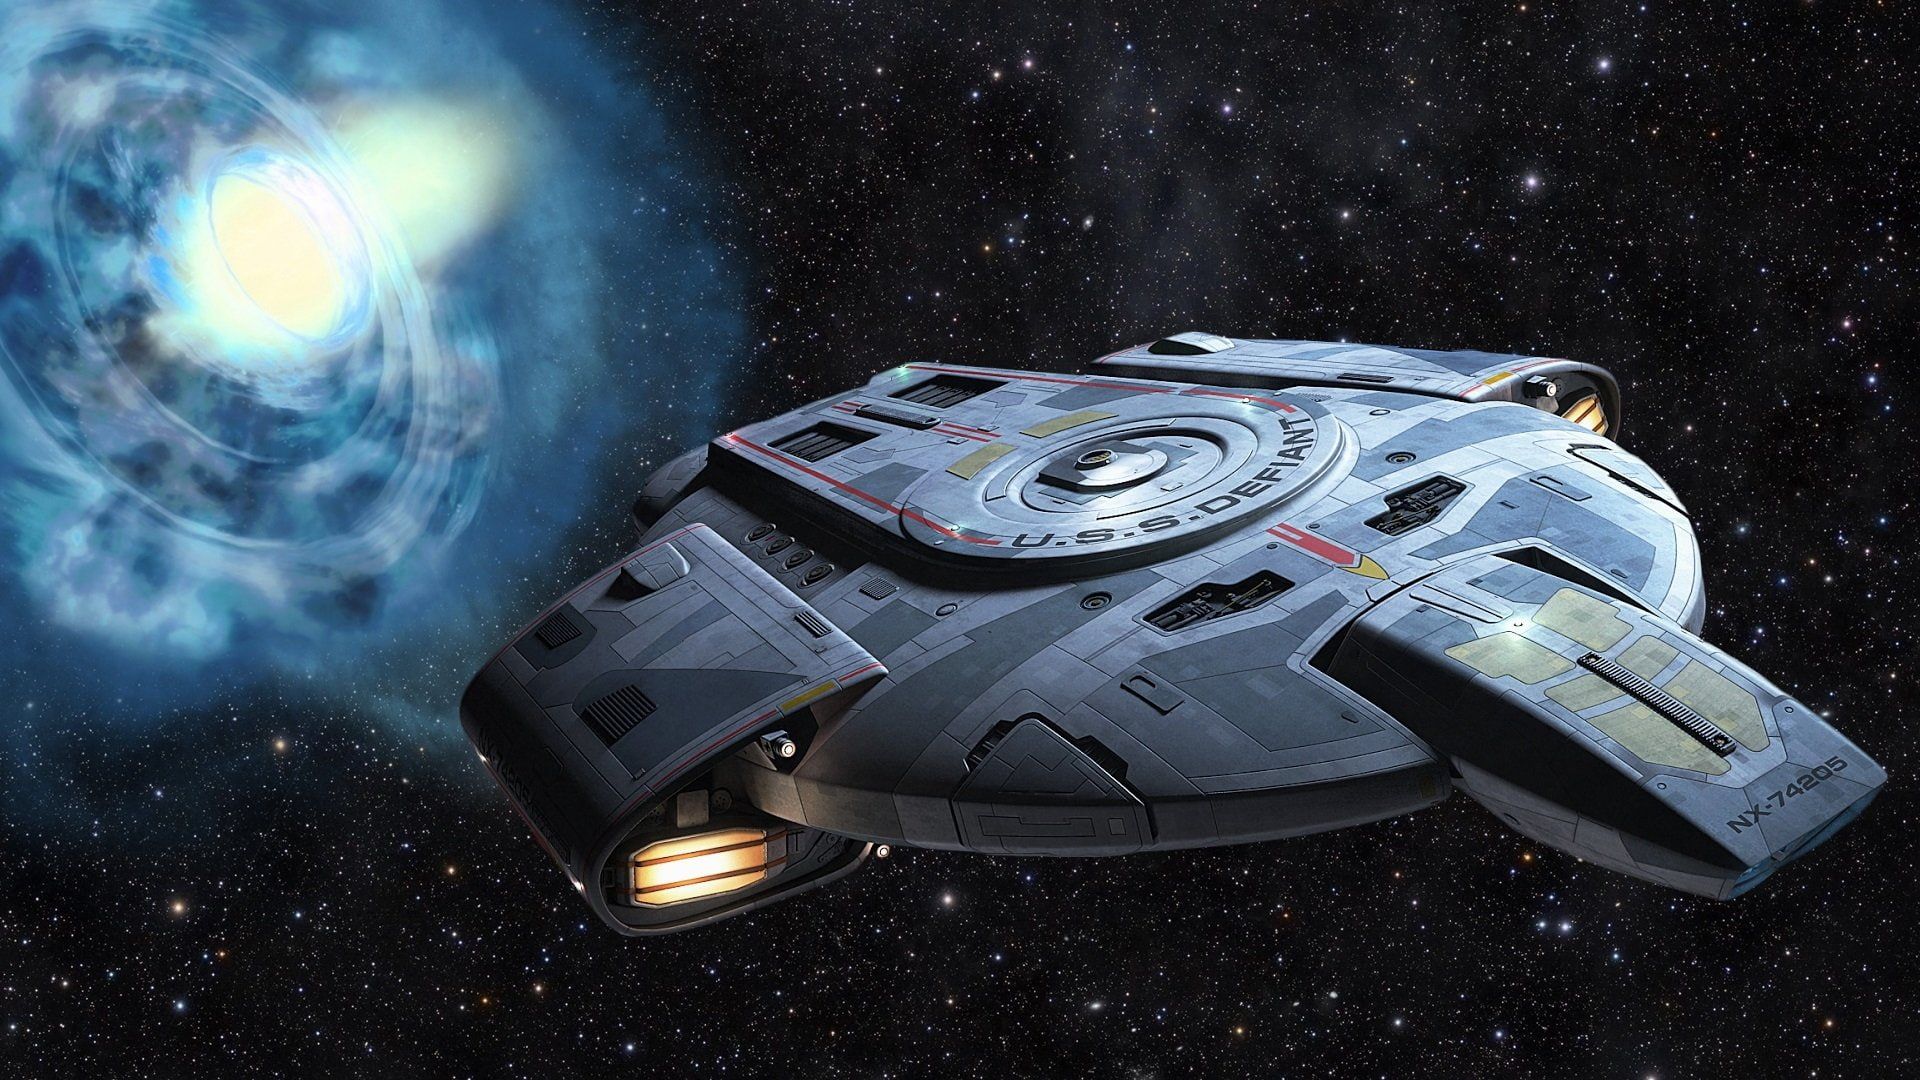 Star Trek Star Trek: Deep Space Nine USS Defiant P #wallpaper #hdwallpaper #desktop. Star trek starships, Star trek, Star trek ds9